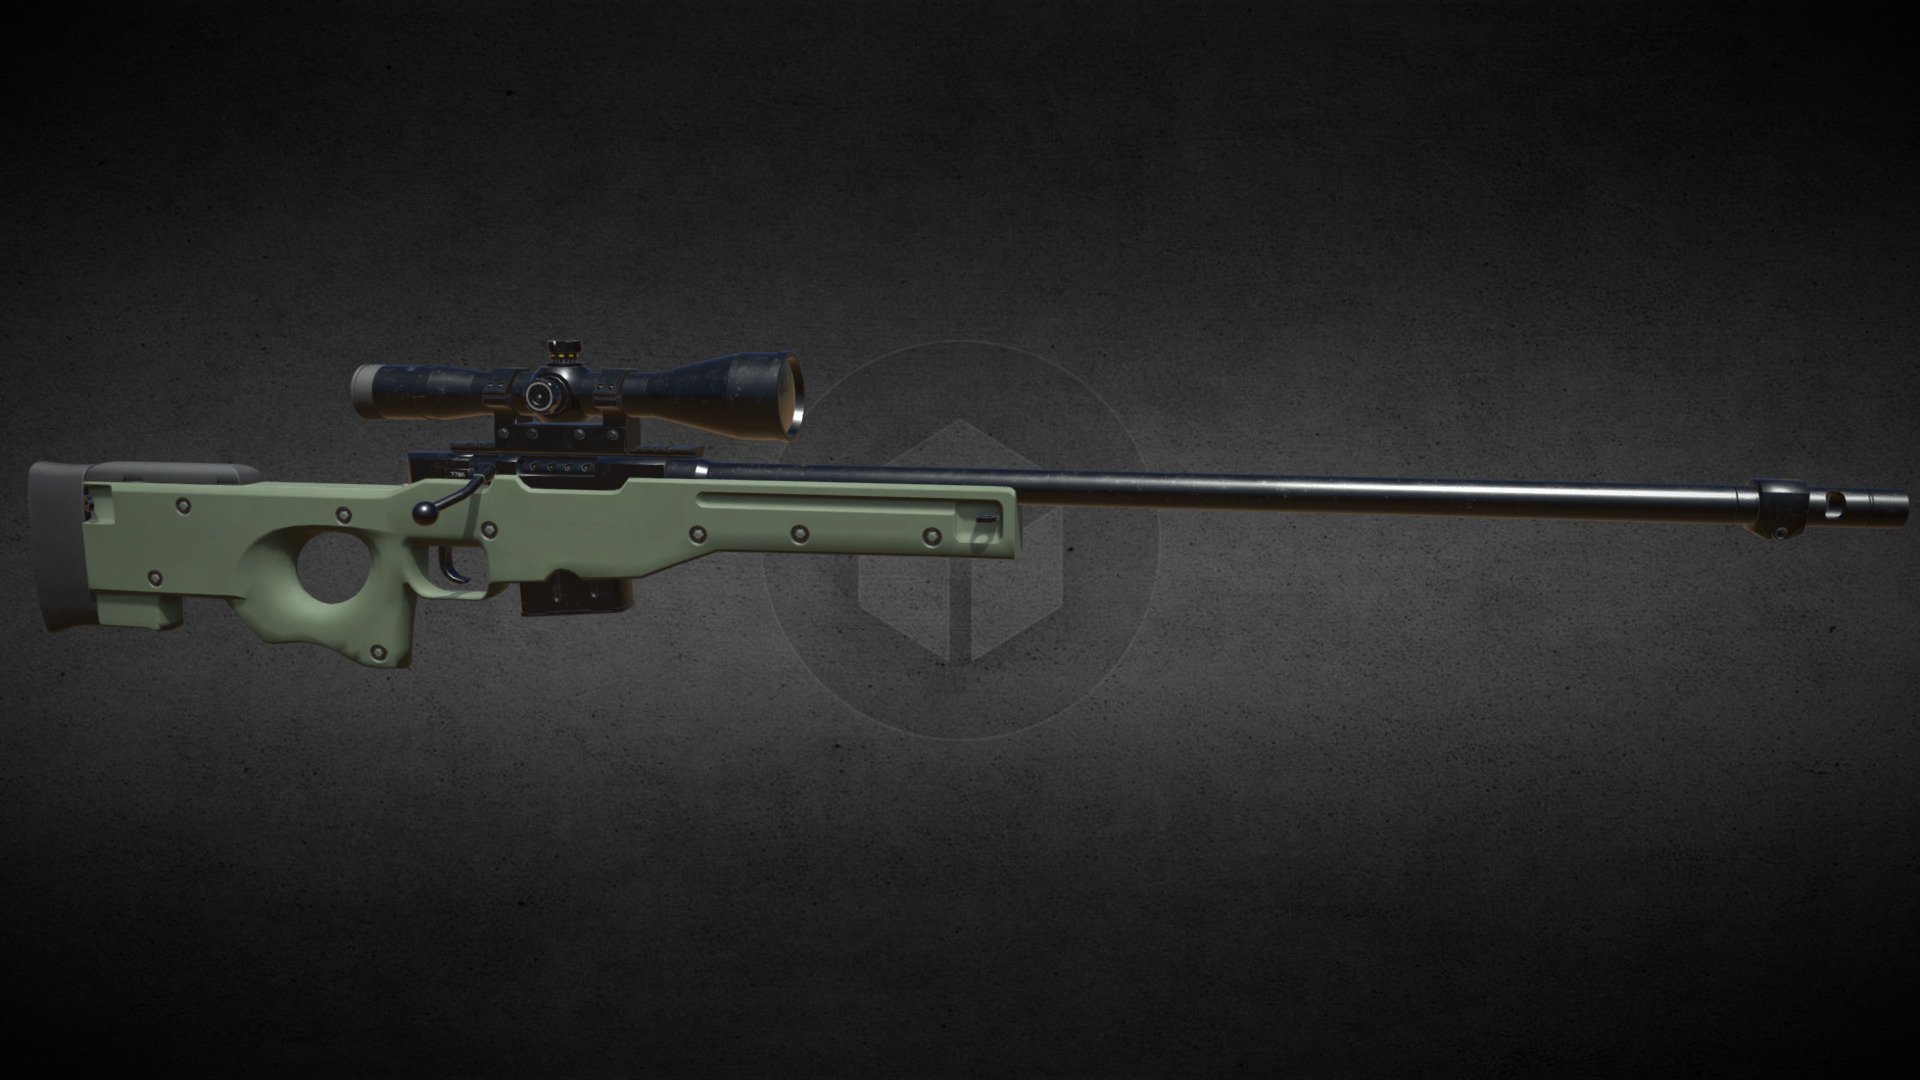 L96 Sniper Rifle